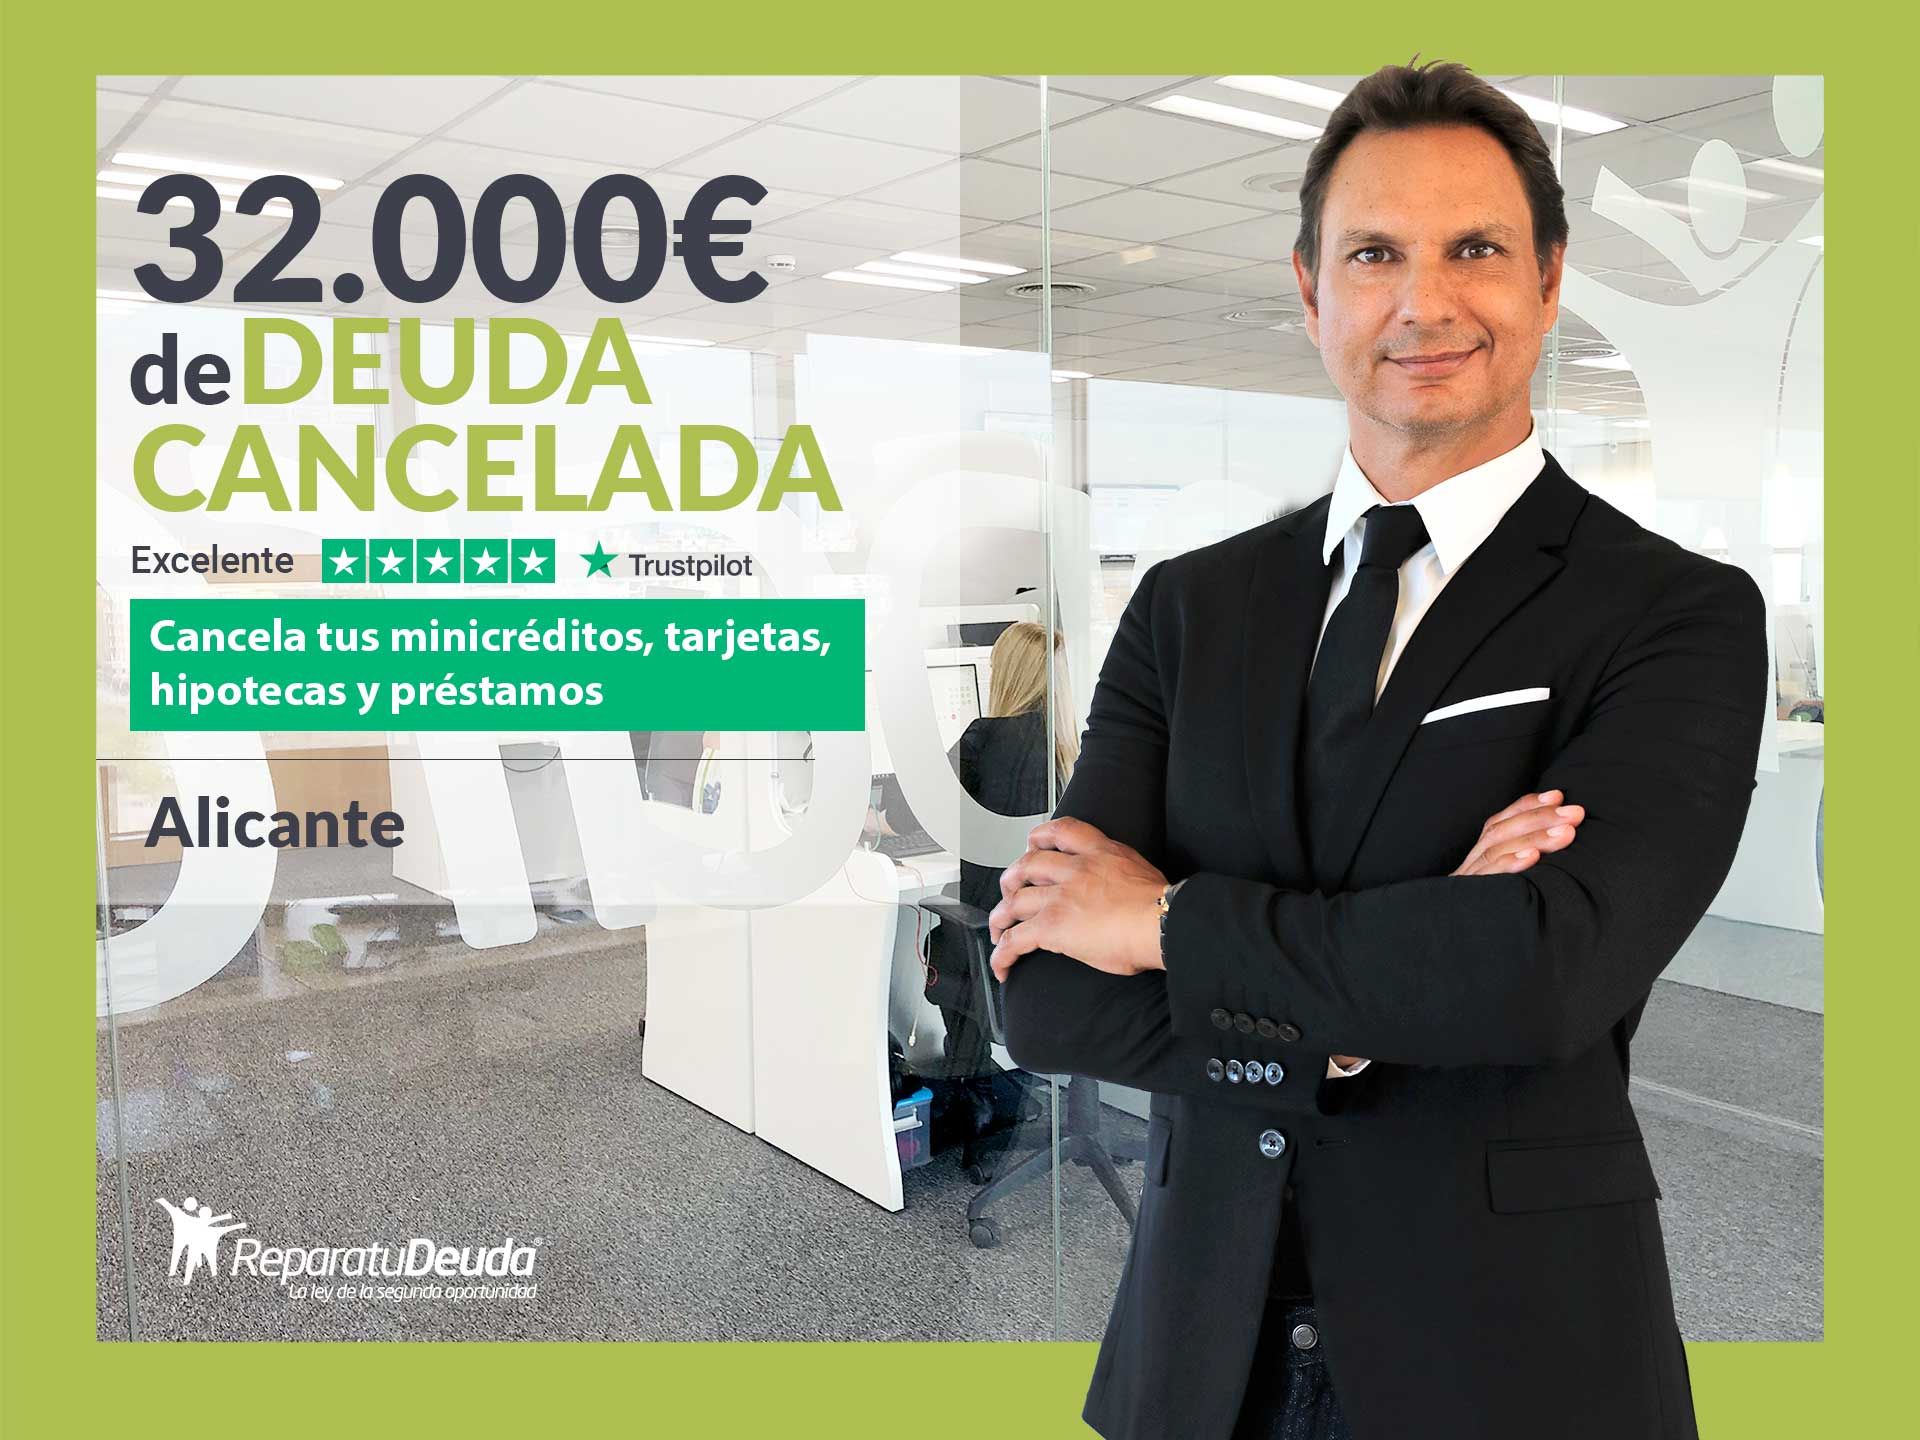 Repara tu Deuda cancela 32.000? en Alicante (Comunidad Valenciana) con la Ley de Segunda Oportunidad